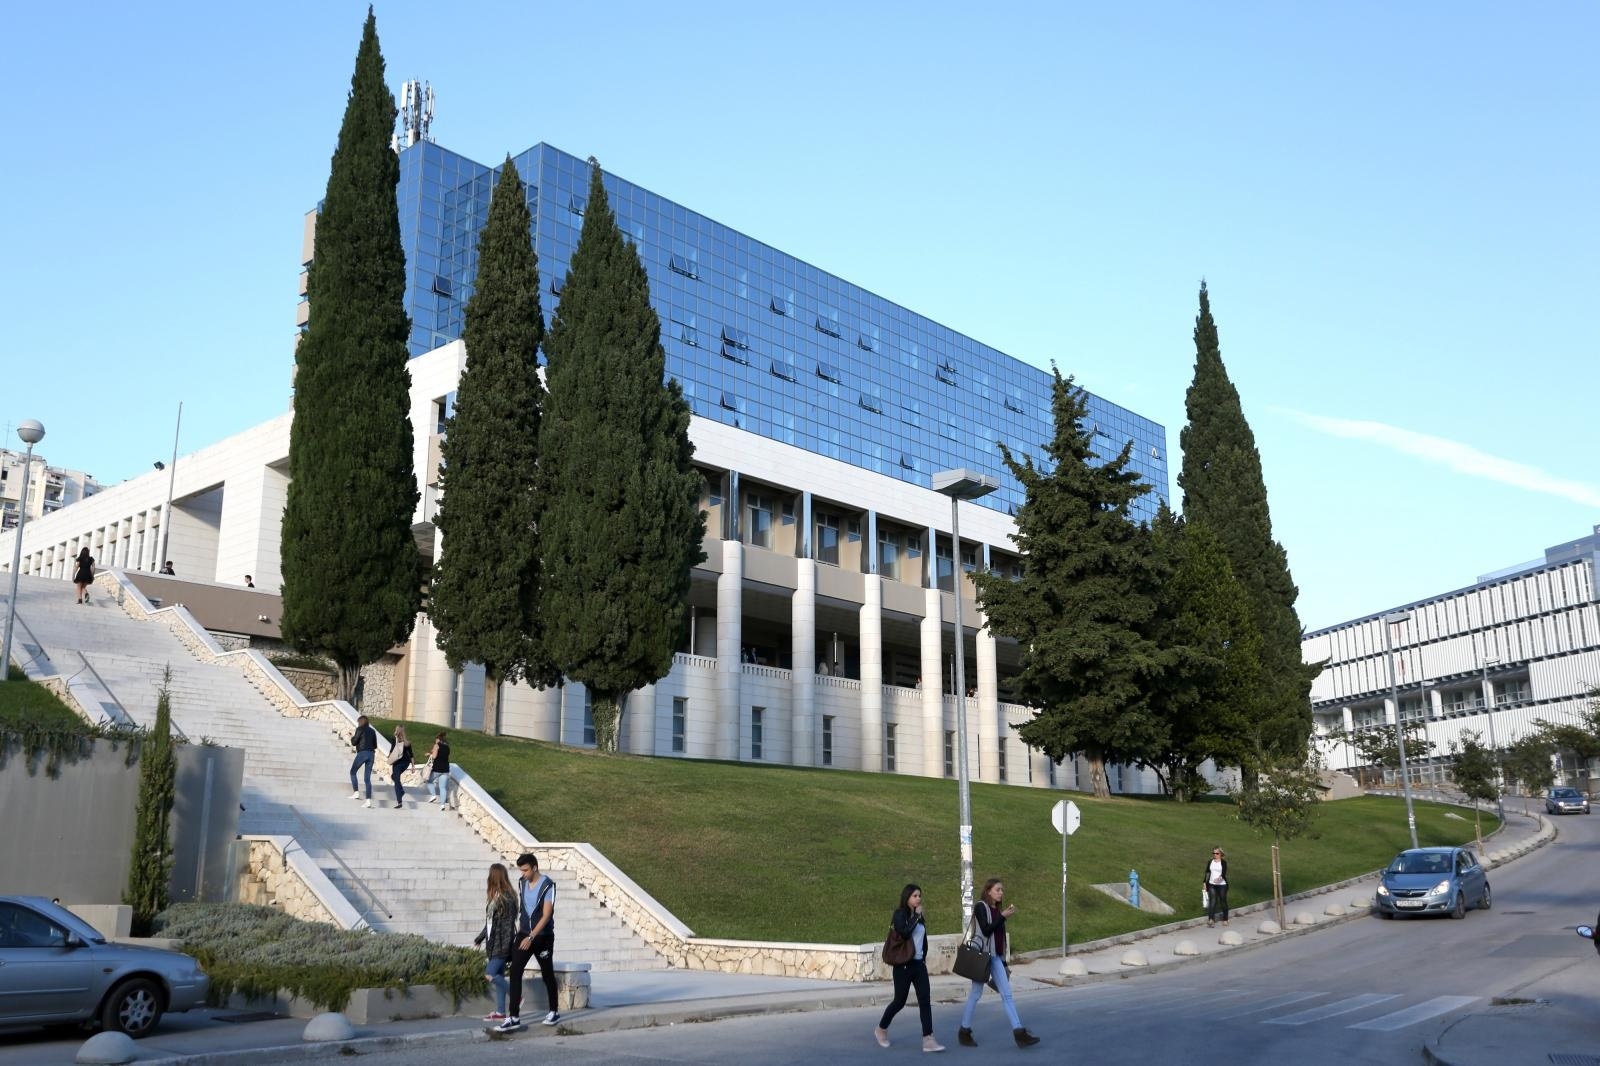 04.11.2015., Split - Sveucilisni kampus. Ekonomski fakultet.
Photo: Miranda Cikotic/PIXSELL,